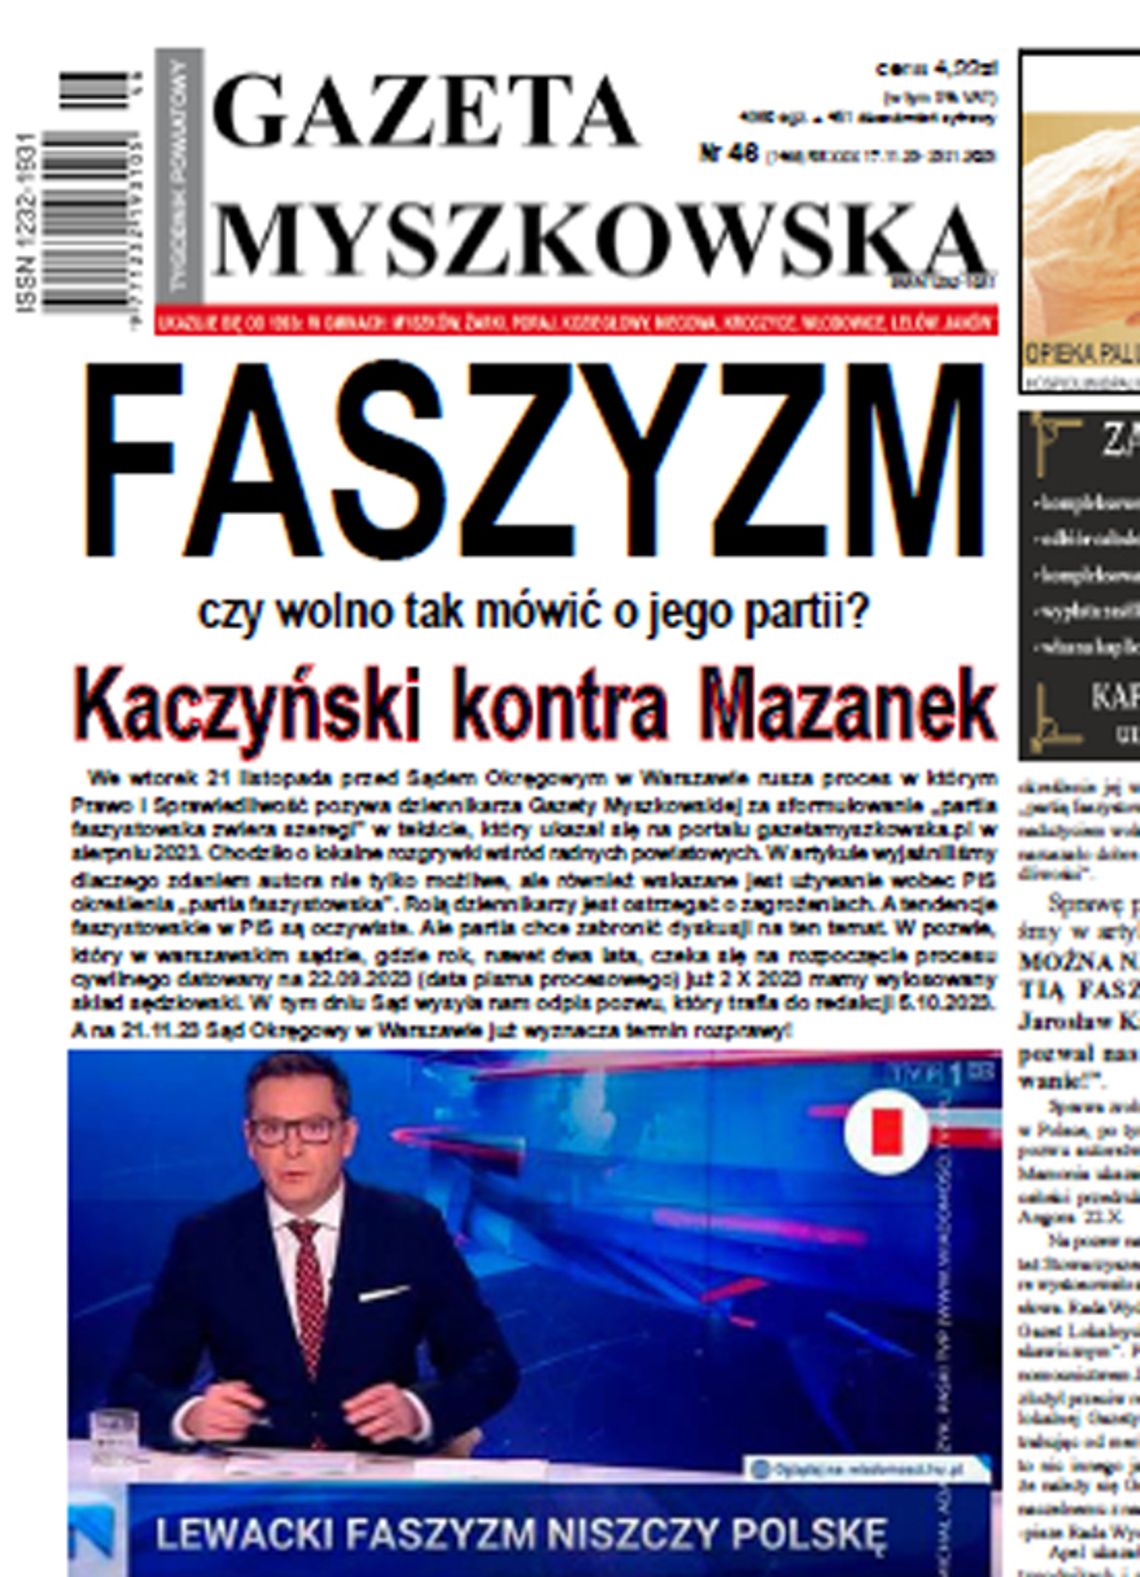 Stowarzyszenie Gazet Lokalnych: Władza chce założyć knebel Gazecie Myszkowskiej i jej naczelnemu Jarosławowi Mazankowi